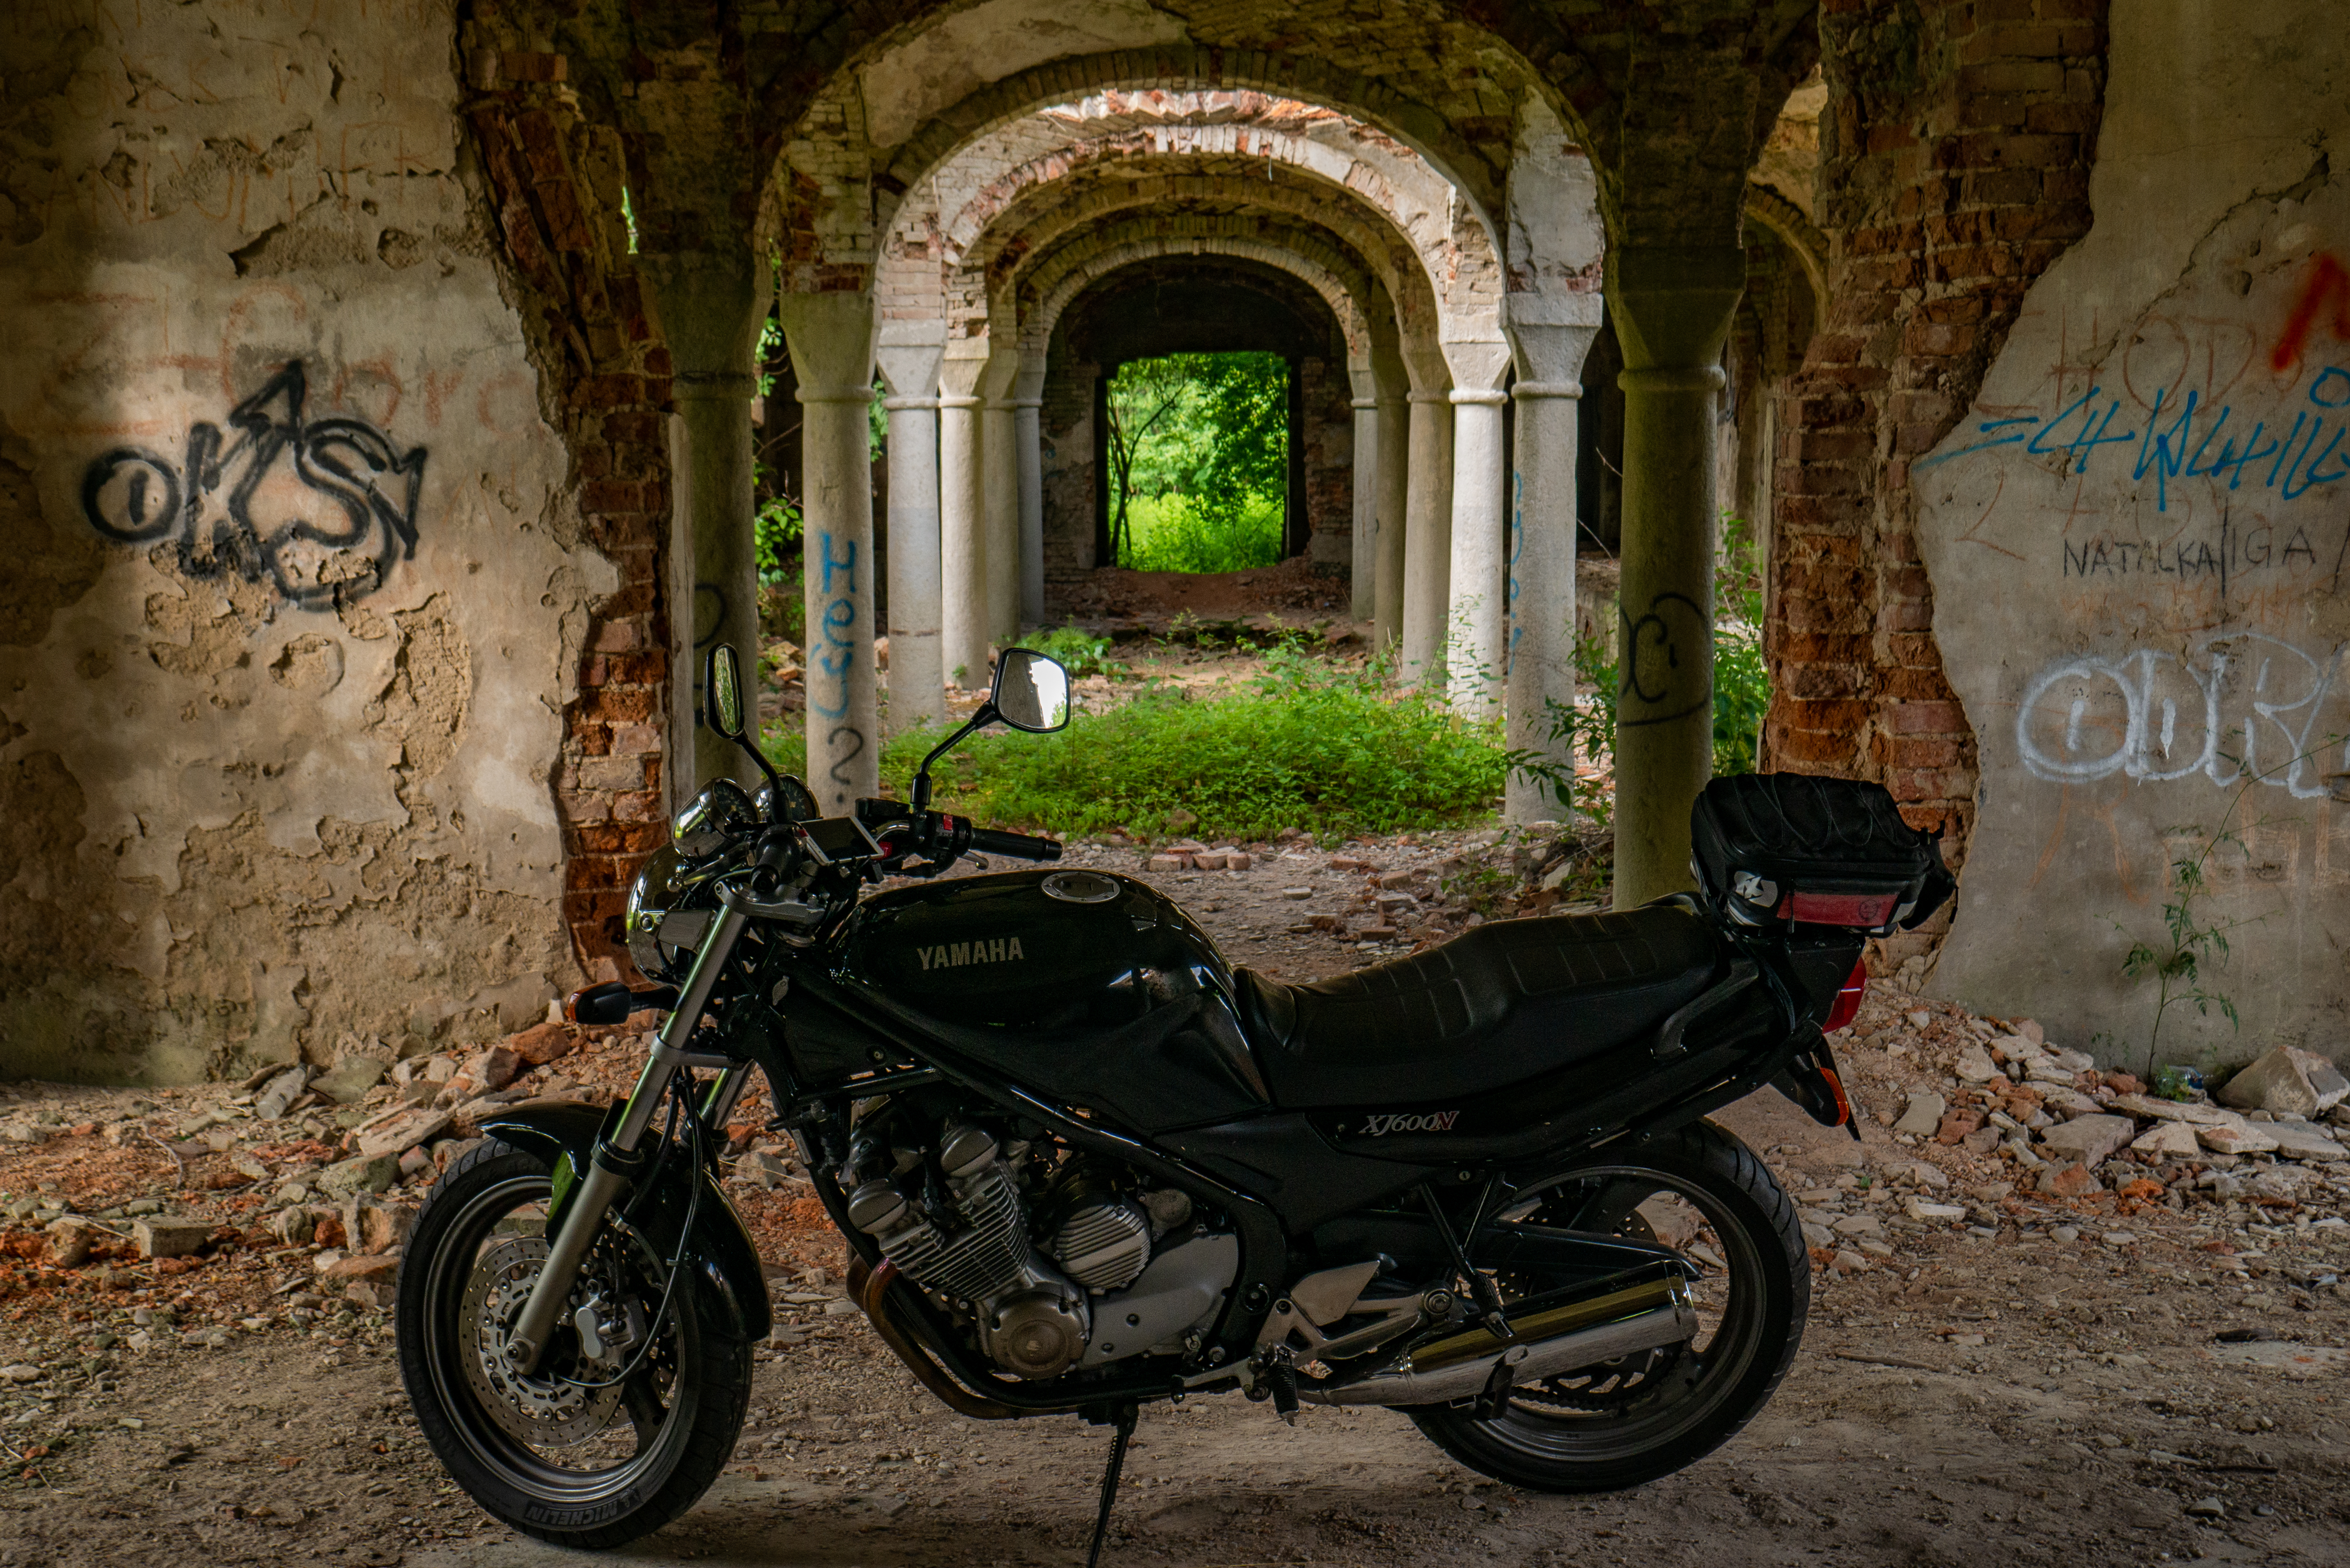 Yamaha Motorcycle Abandoned Vehicle 4500x3003